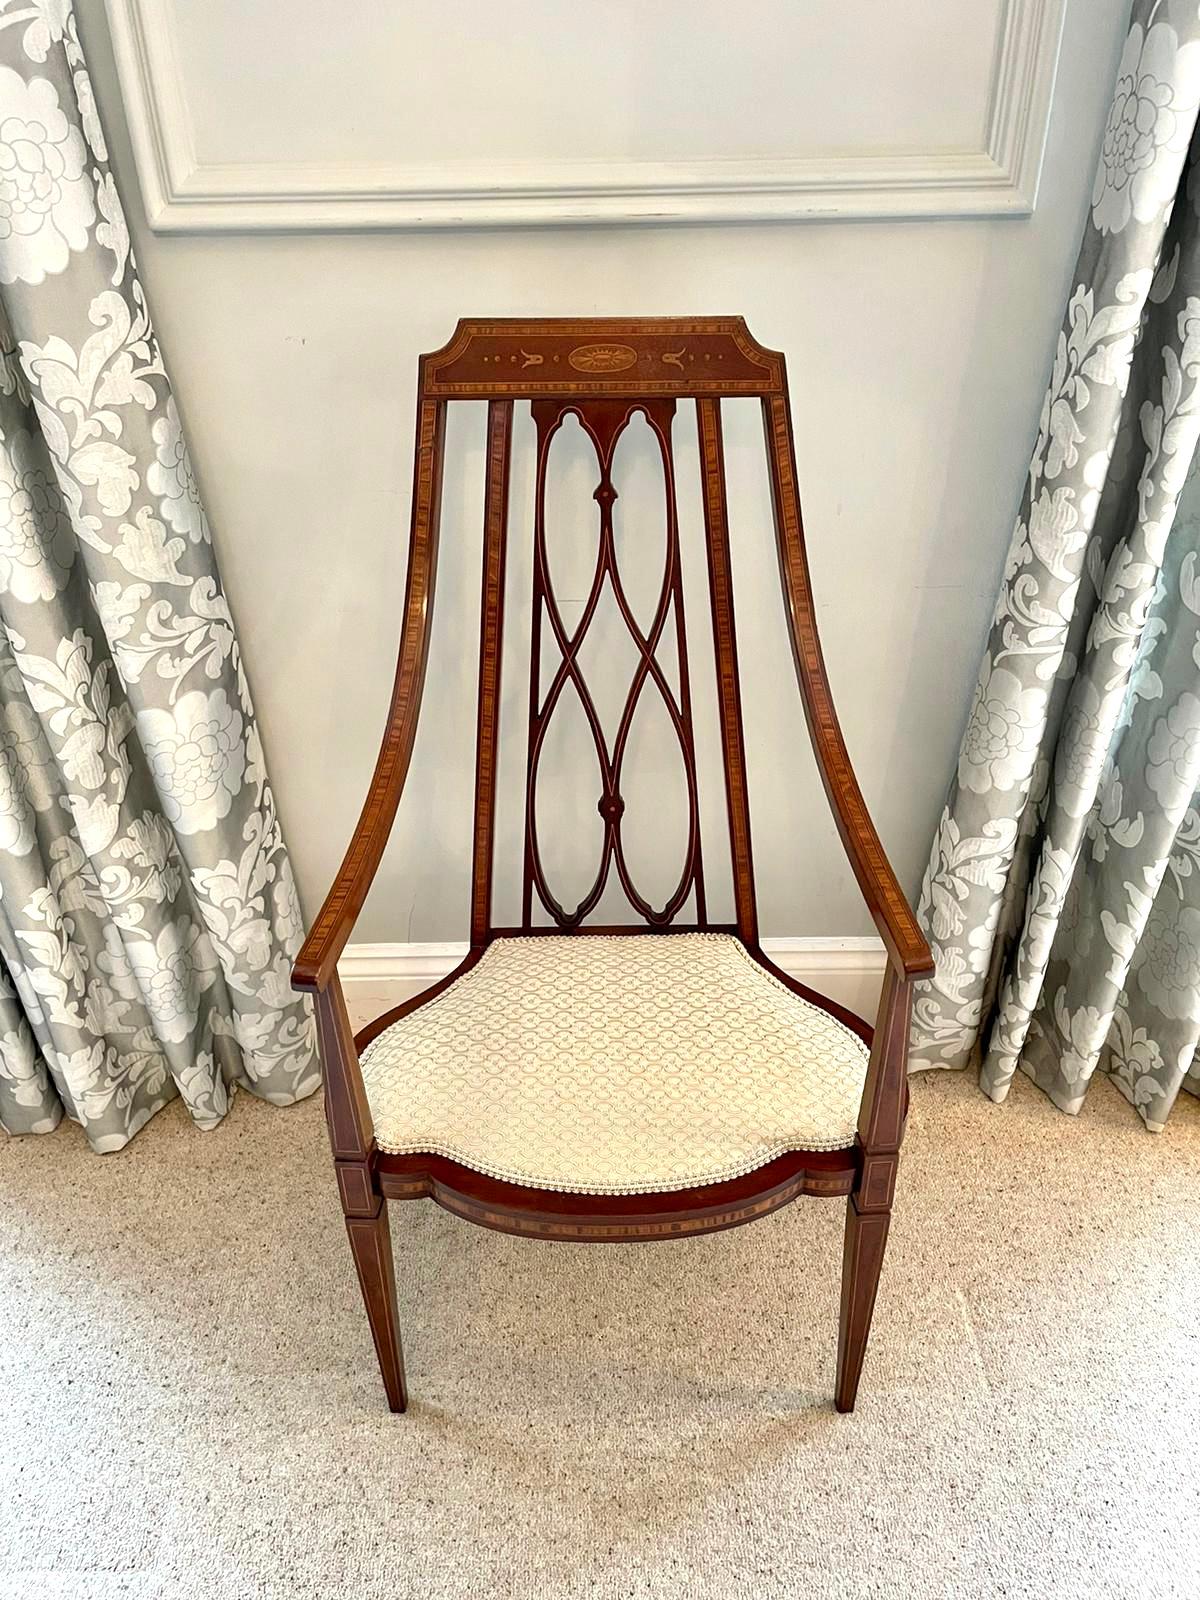 Ungewöhnlicher, antiker, viktorianischer Mahagoni-Sessel mit Intarsien aus dem 19. Jahrhundert, der eine ansprechend geformte obere Schiene mit Satinholz-Intarsien und ungewöhnlich hübsch geformte offene Armlehnen mit Satinholz-Intarsien aufweist.